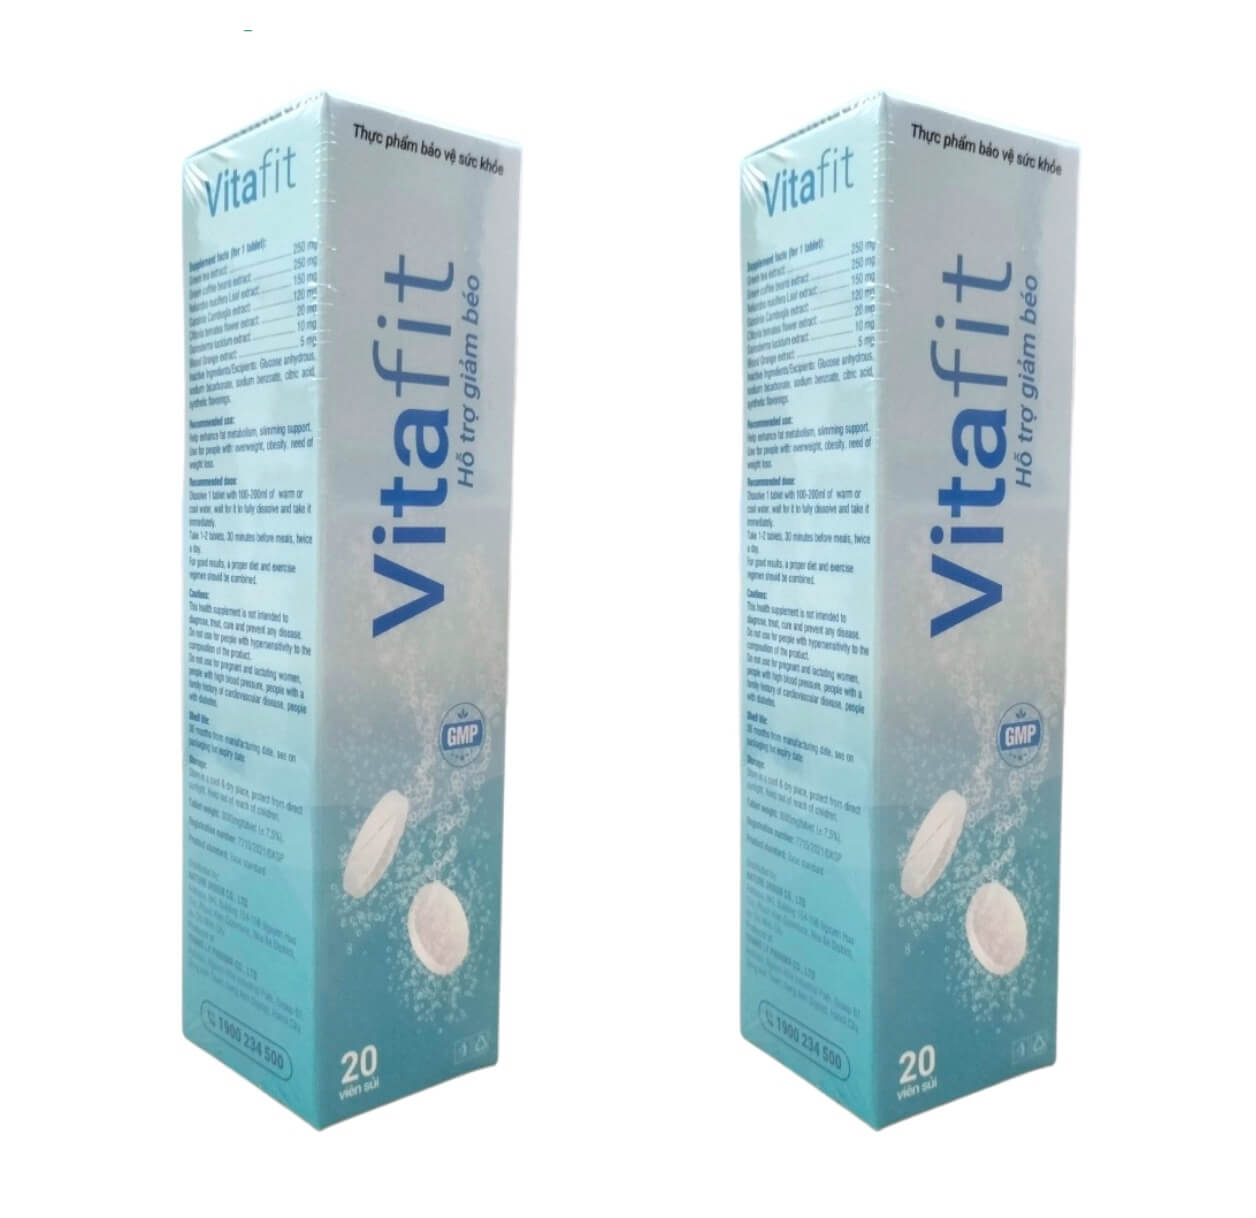 Vitafit là thuốc gì, thuốc giảm cân Vitafit có tốt không hay lừa đảo giá bao nhiêu hình 6